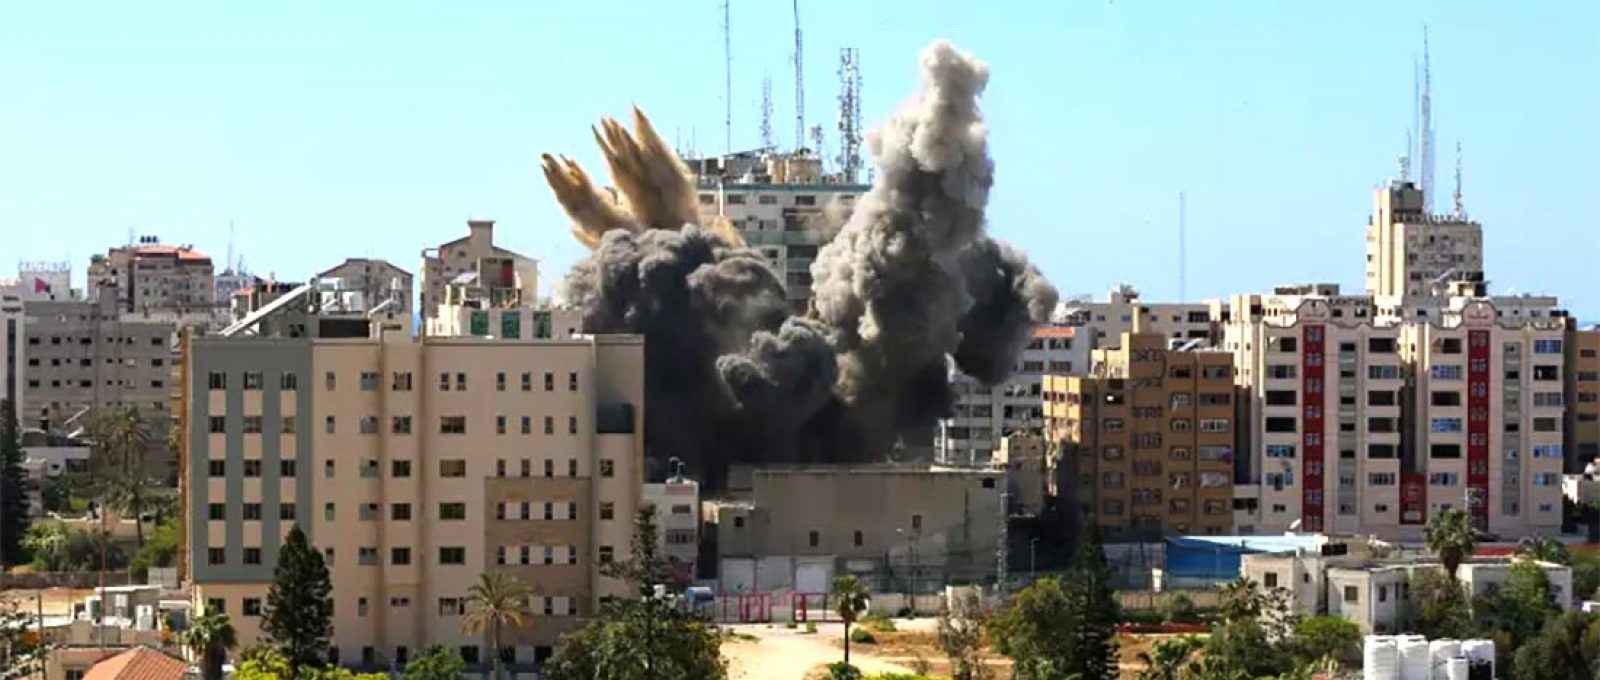 Um míssil cai enquanto a fumaça sobe perto de uma torre que abriga os escritórios da AP, Al Jazeera, durante ataques de mísseis israelenses na cidade de Gaza, 15 de maio de 2021 (Foto: Ashraf Abu Amrah/Reuters).